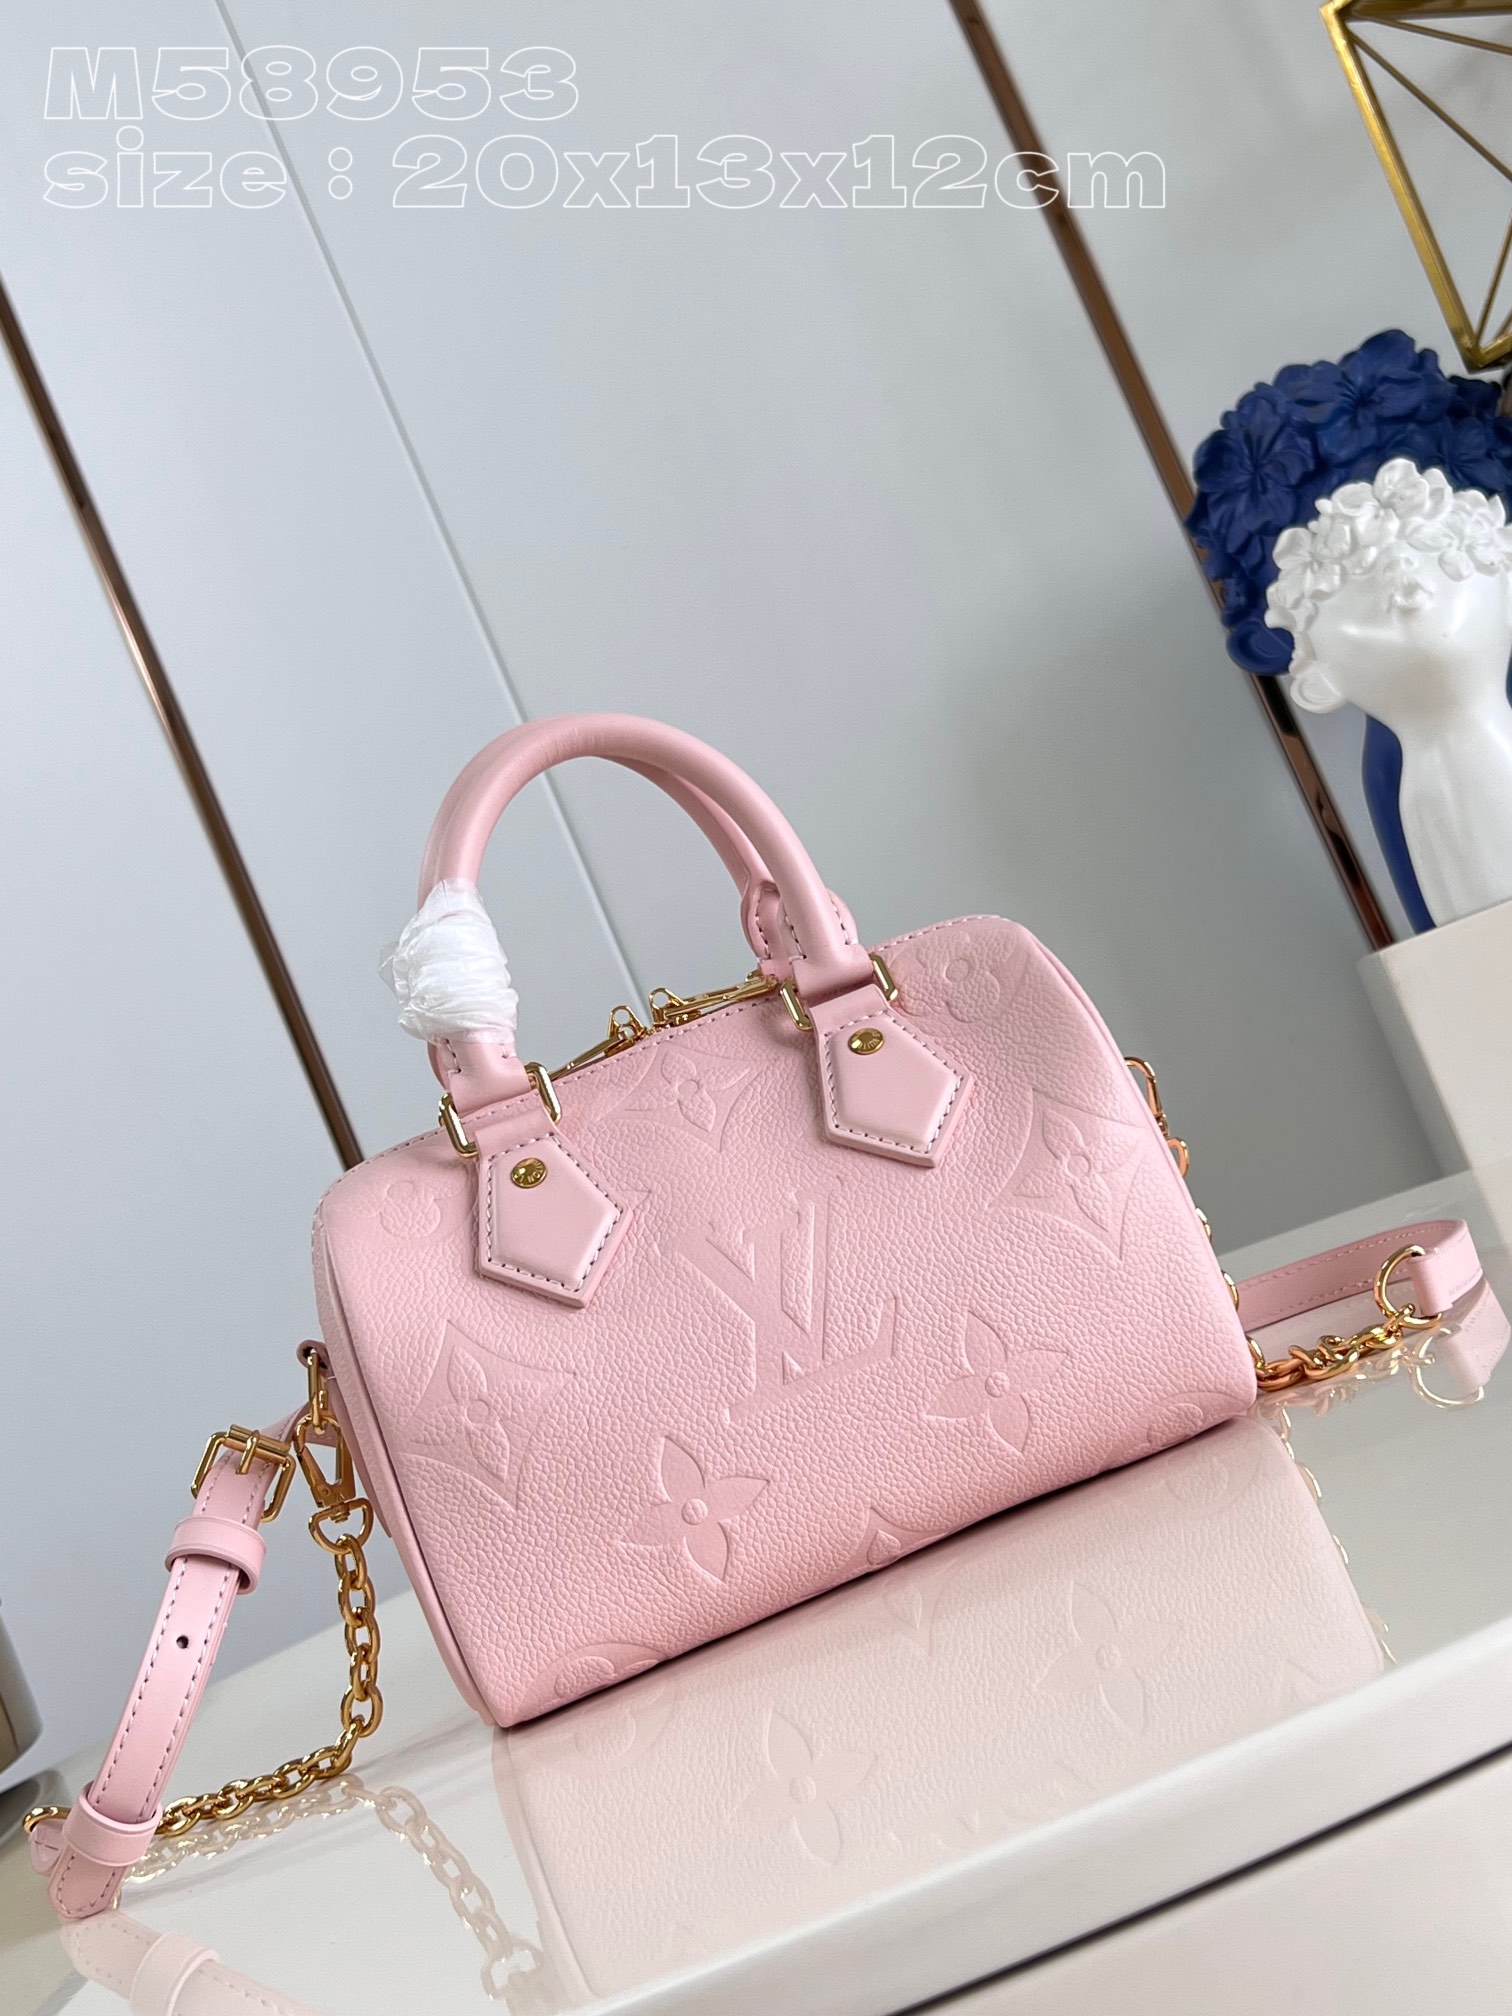 Louis Vuitton LV Speedy Tassen handtassen Roze Empreinte​ Fashion Kettingen M58953